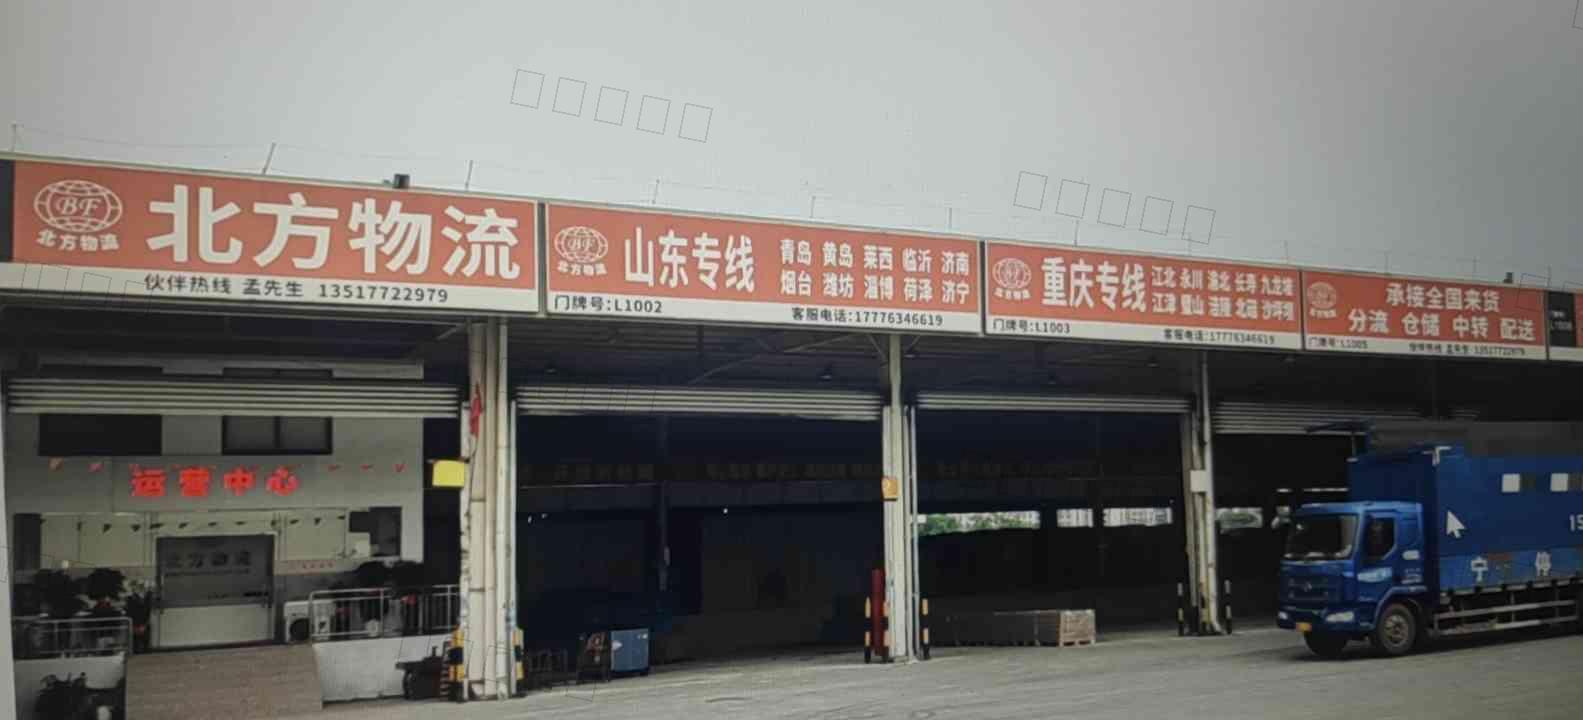 柳州市北方货物运输有限公司